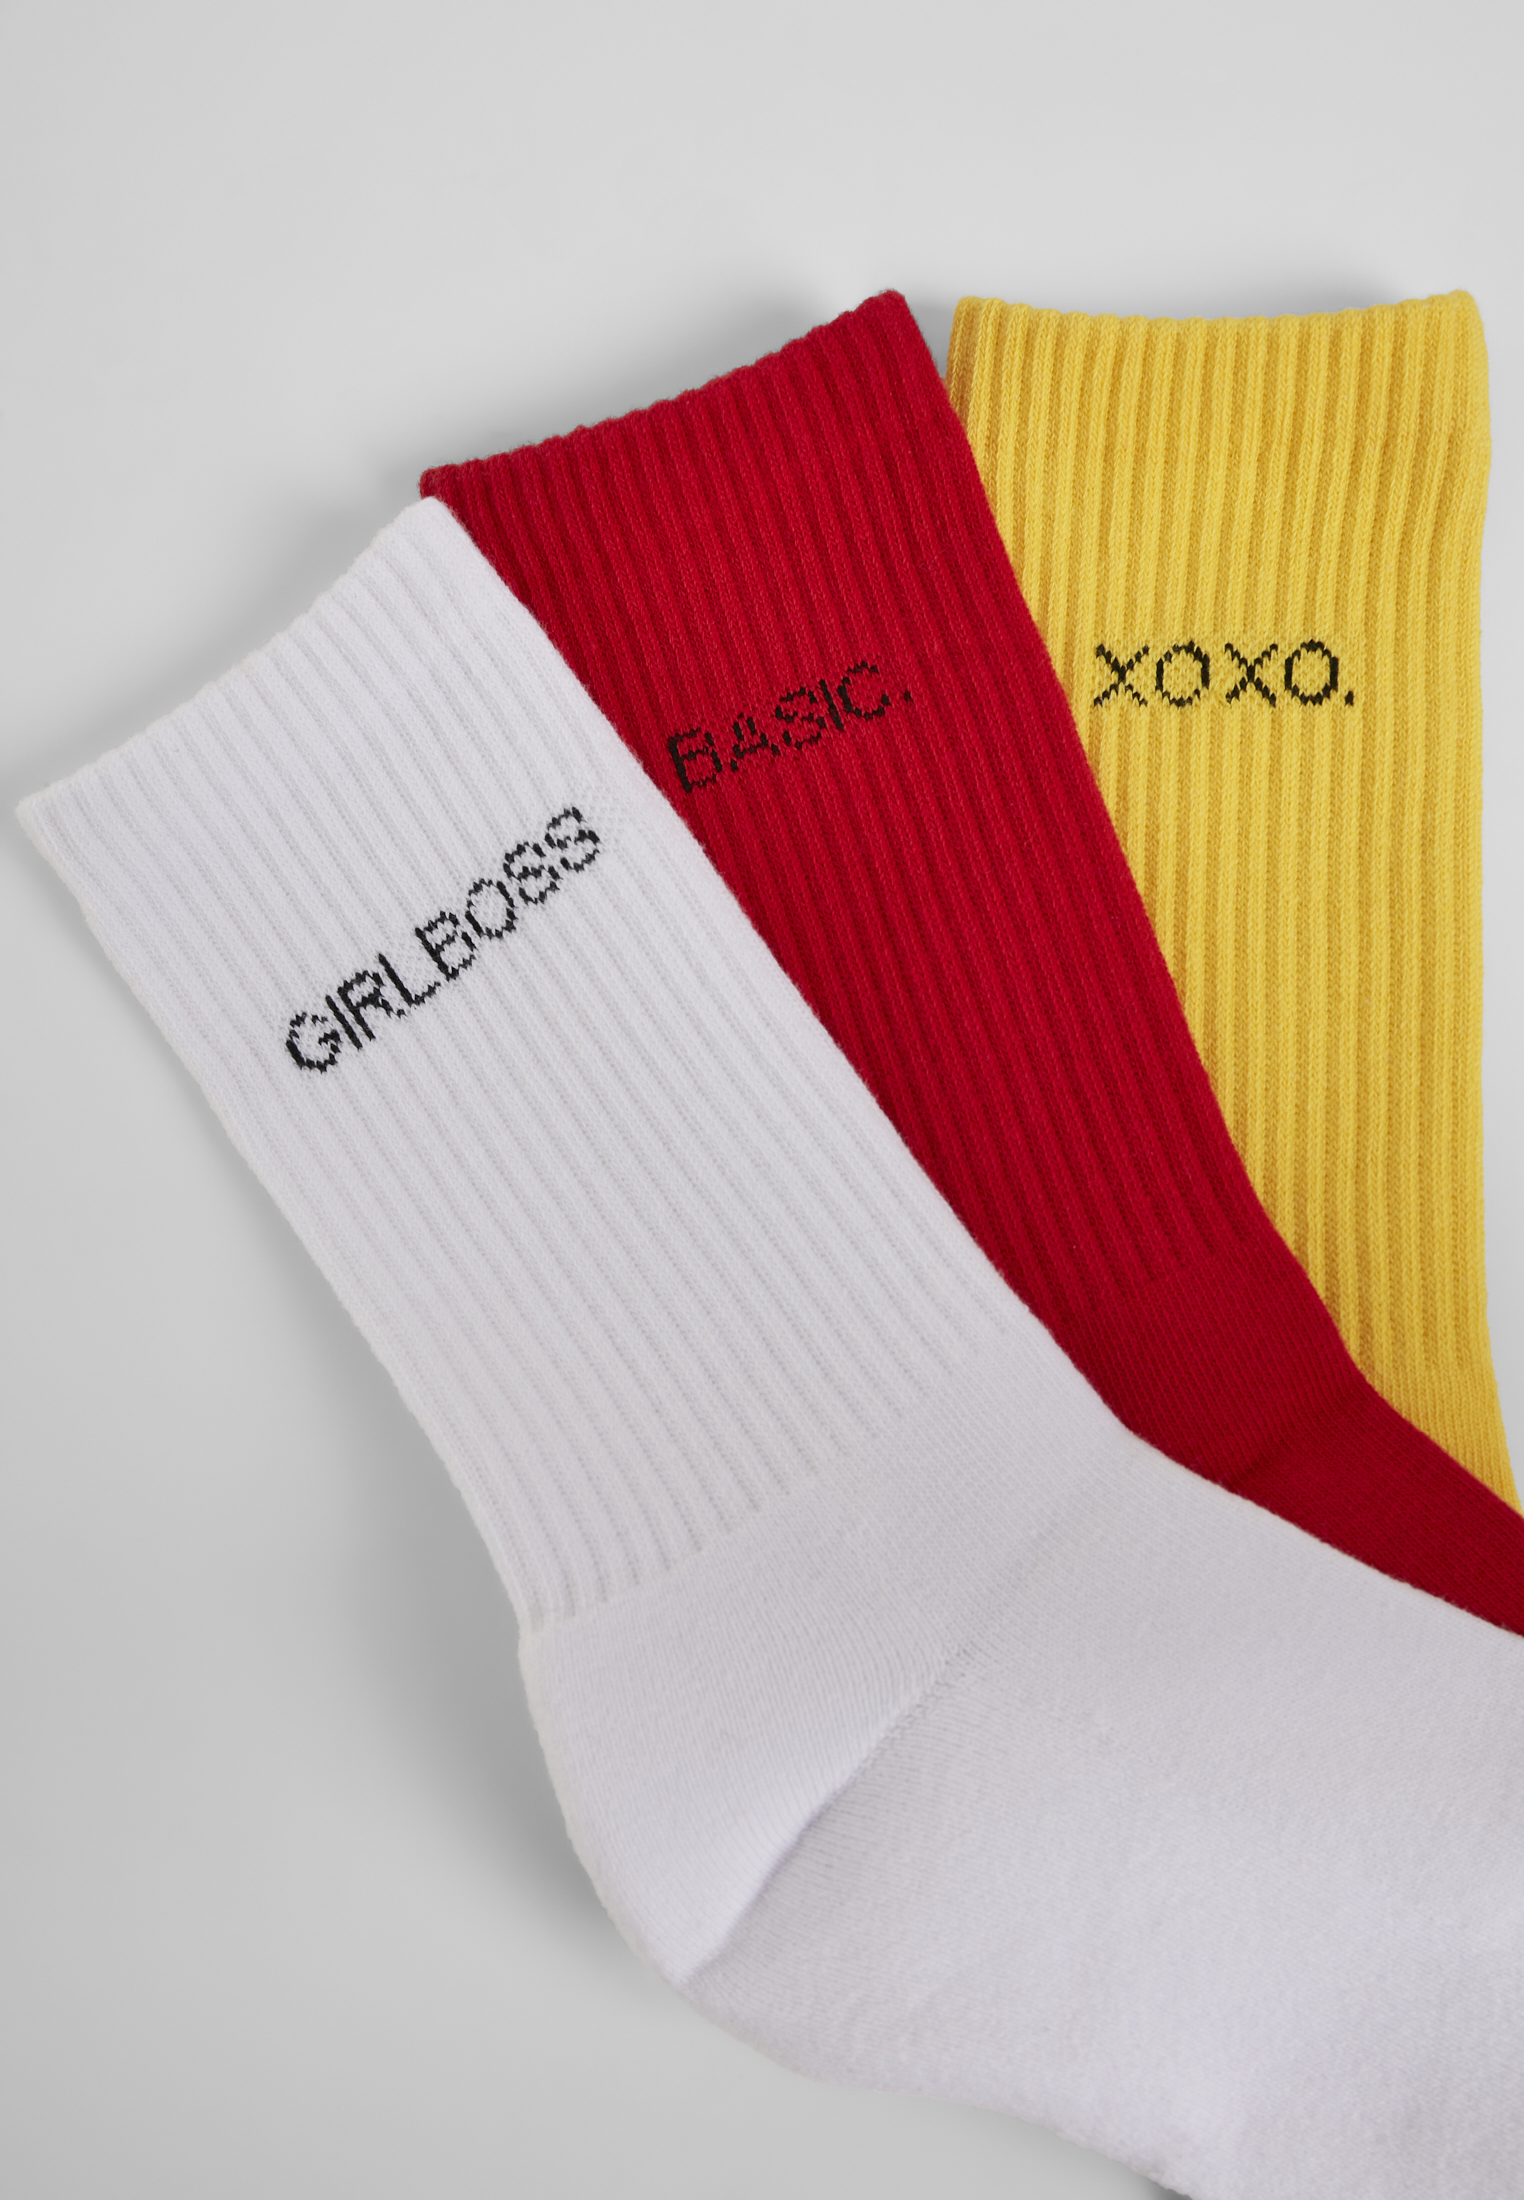 Socken Wording Socks 3-Pack in Farbe yellow/red/white